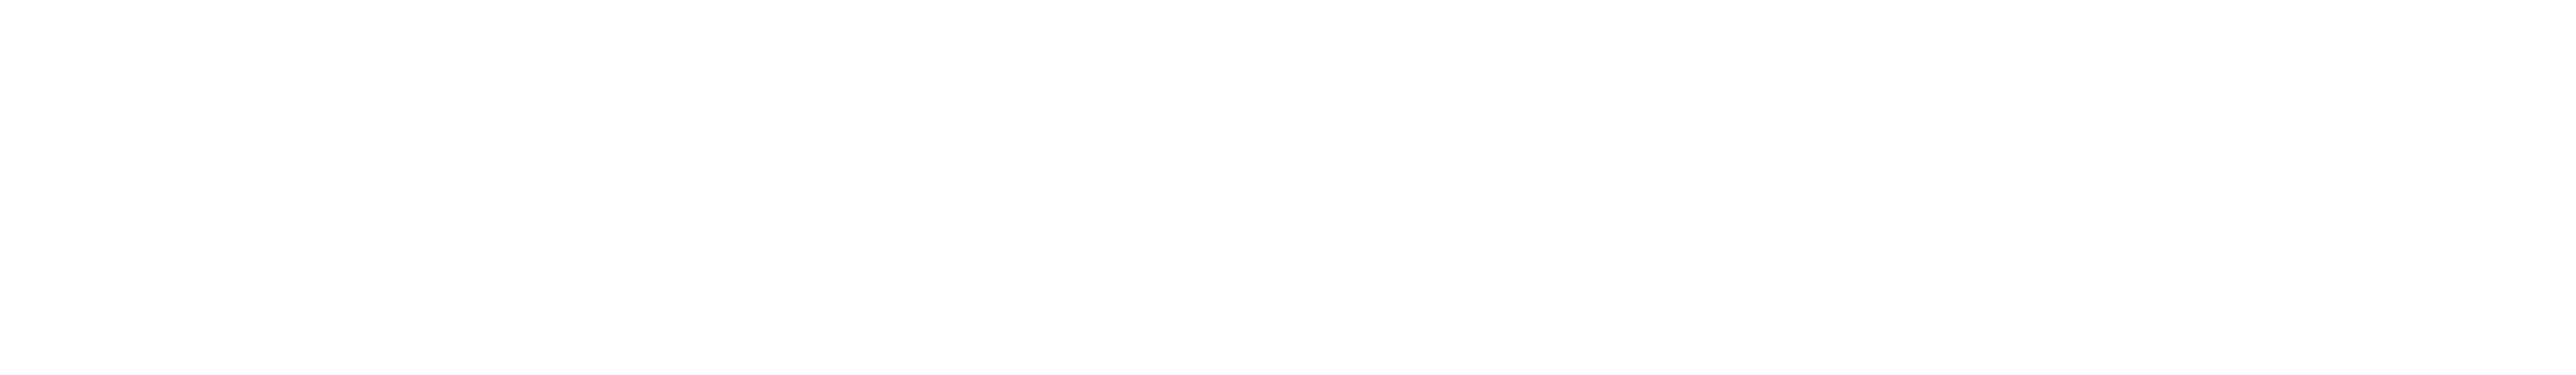 Conceptboard Logo white